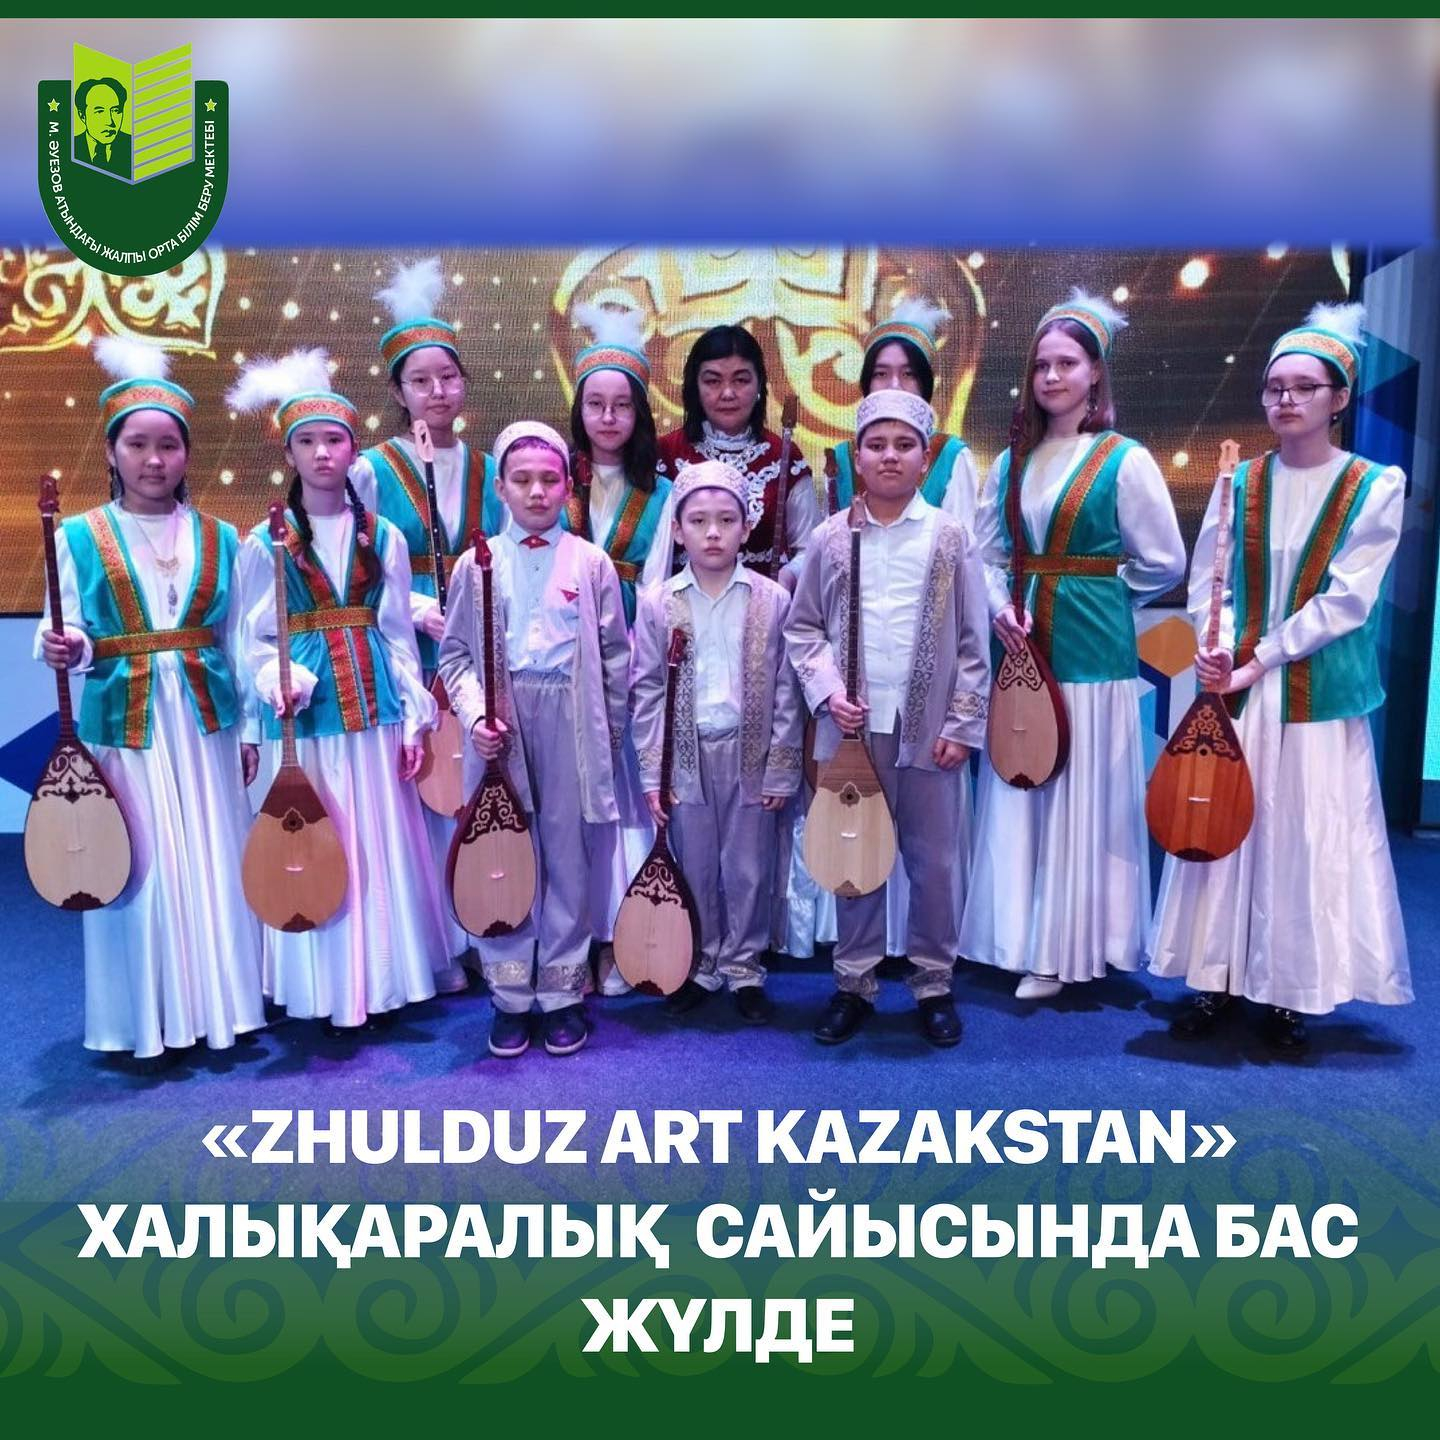 07 апреля в музыкальном зале ПГУ им. Торайгырова состоялся международный многожанровый конкурс «ZHULDUZ ART KAZAKSTAN», в котором приняли участие учащиеся школы им. Мухтара Ауэзова.